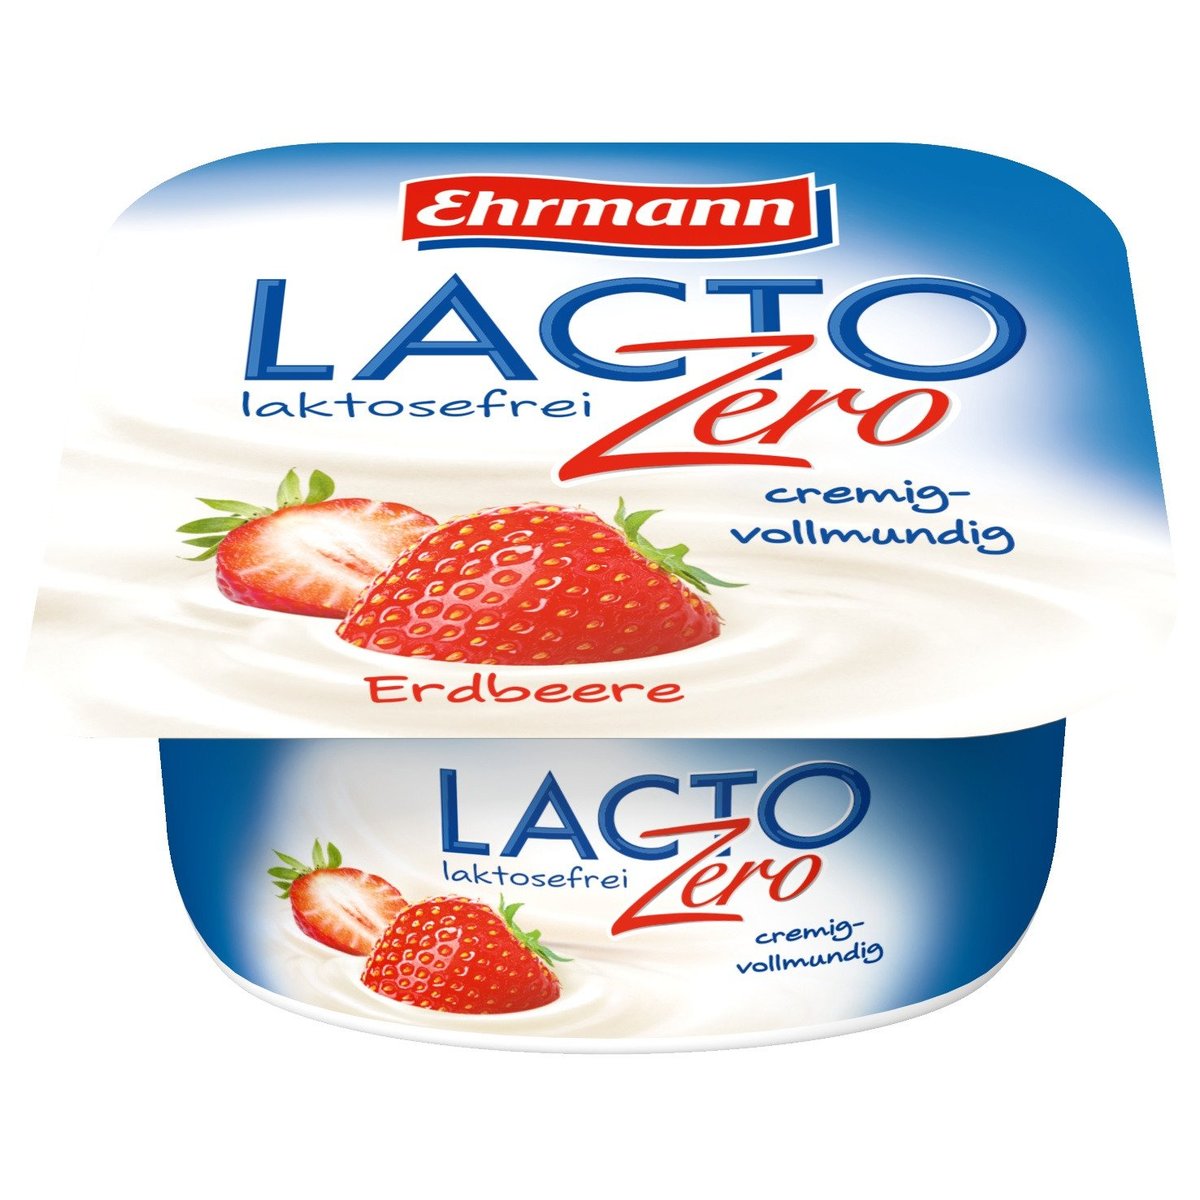 Ehrmann LactoZero bezlaktózový jogurt řeckého typu MIX